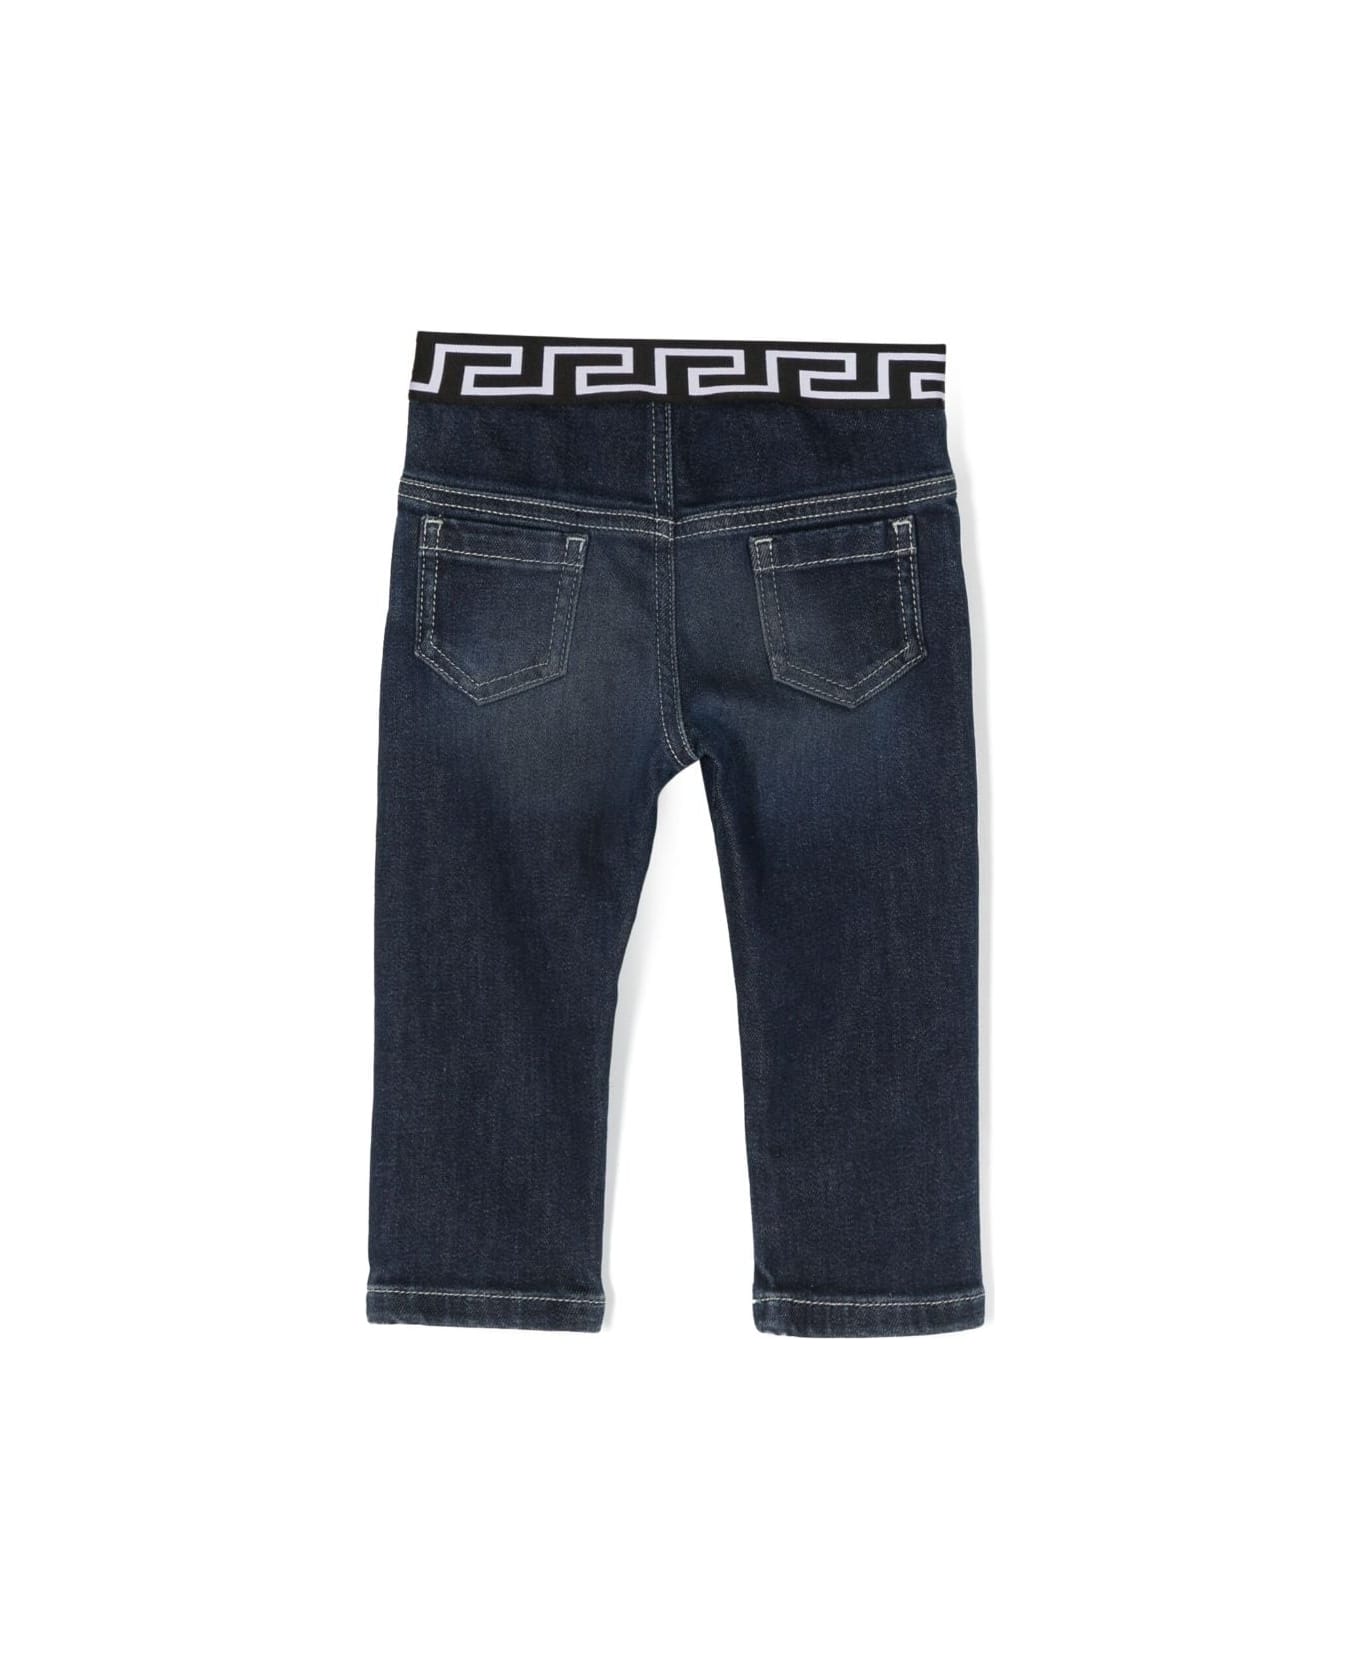 Versace Pantaloni Blu In Demin Di Cotone Stretch Baby Boy - Blu ボトムス